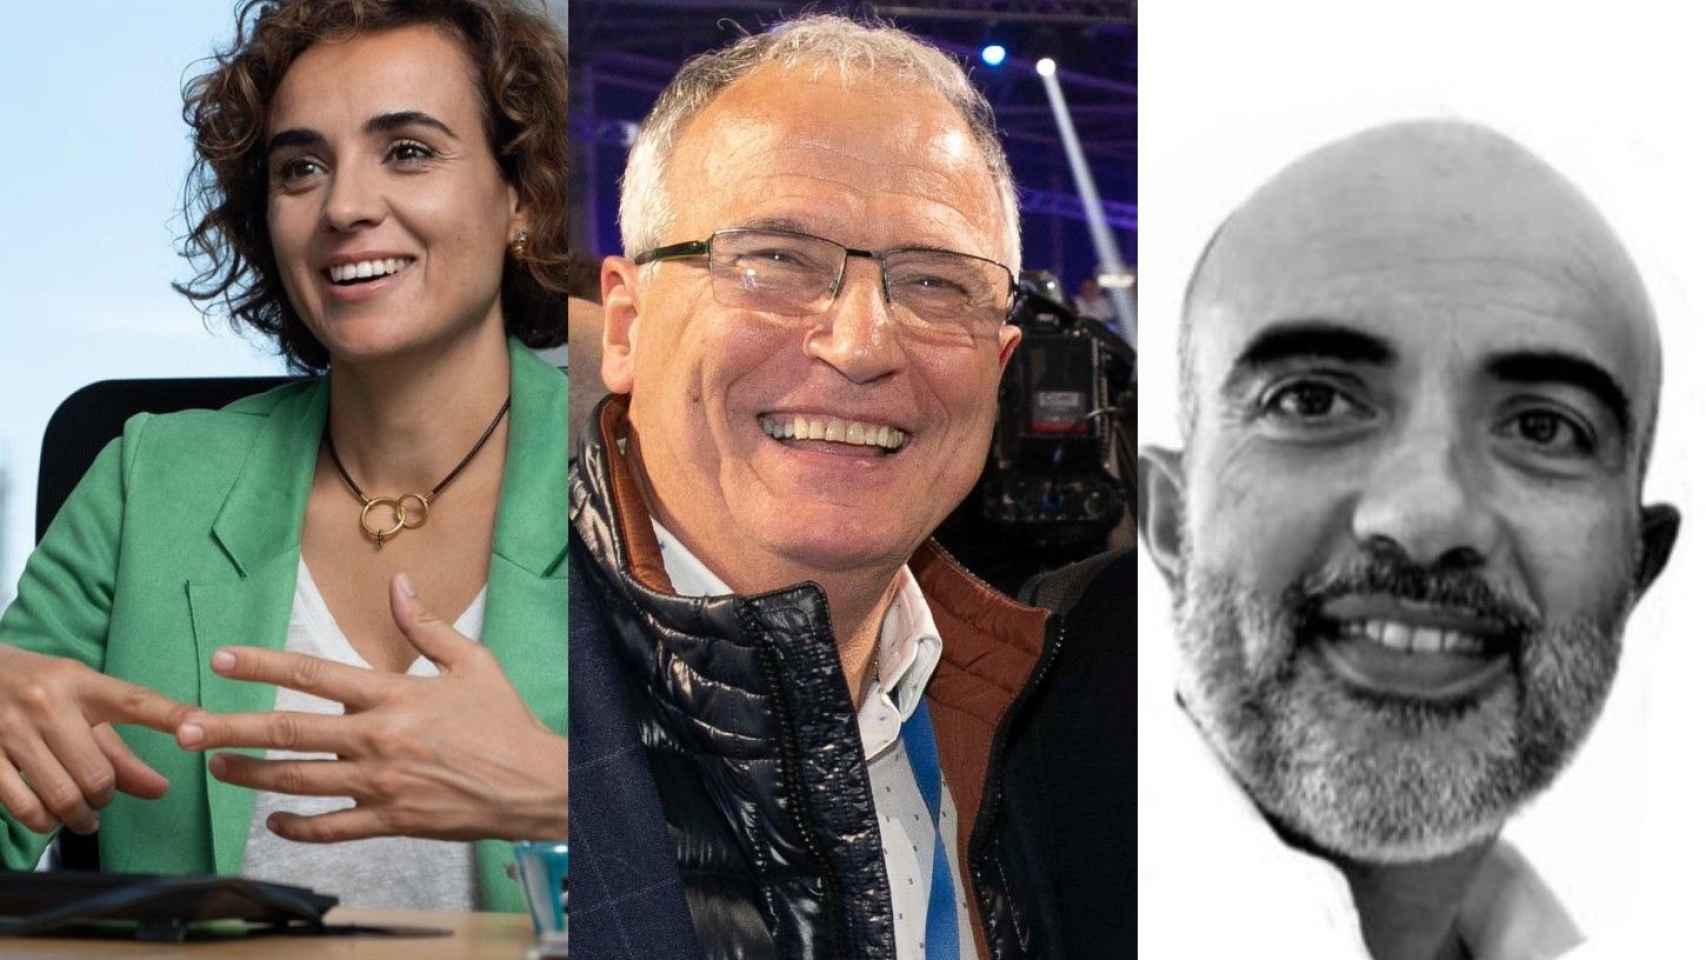 De izquierda a derecha, imágenes de Dolors Montserrat, Josep Bou y Daniel Sirera, posibles candidatos del PP en Barcelona